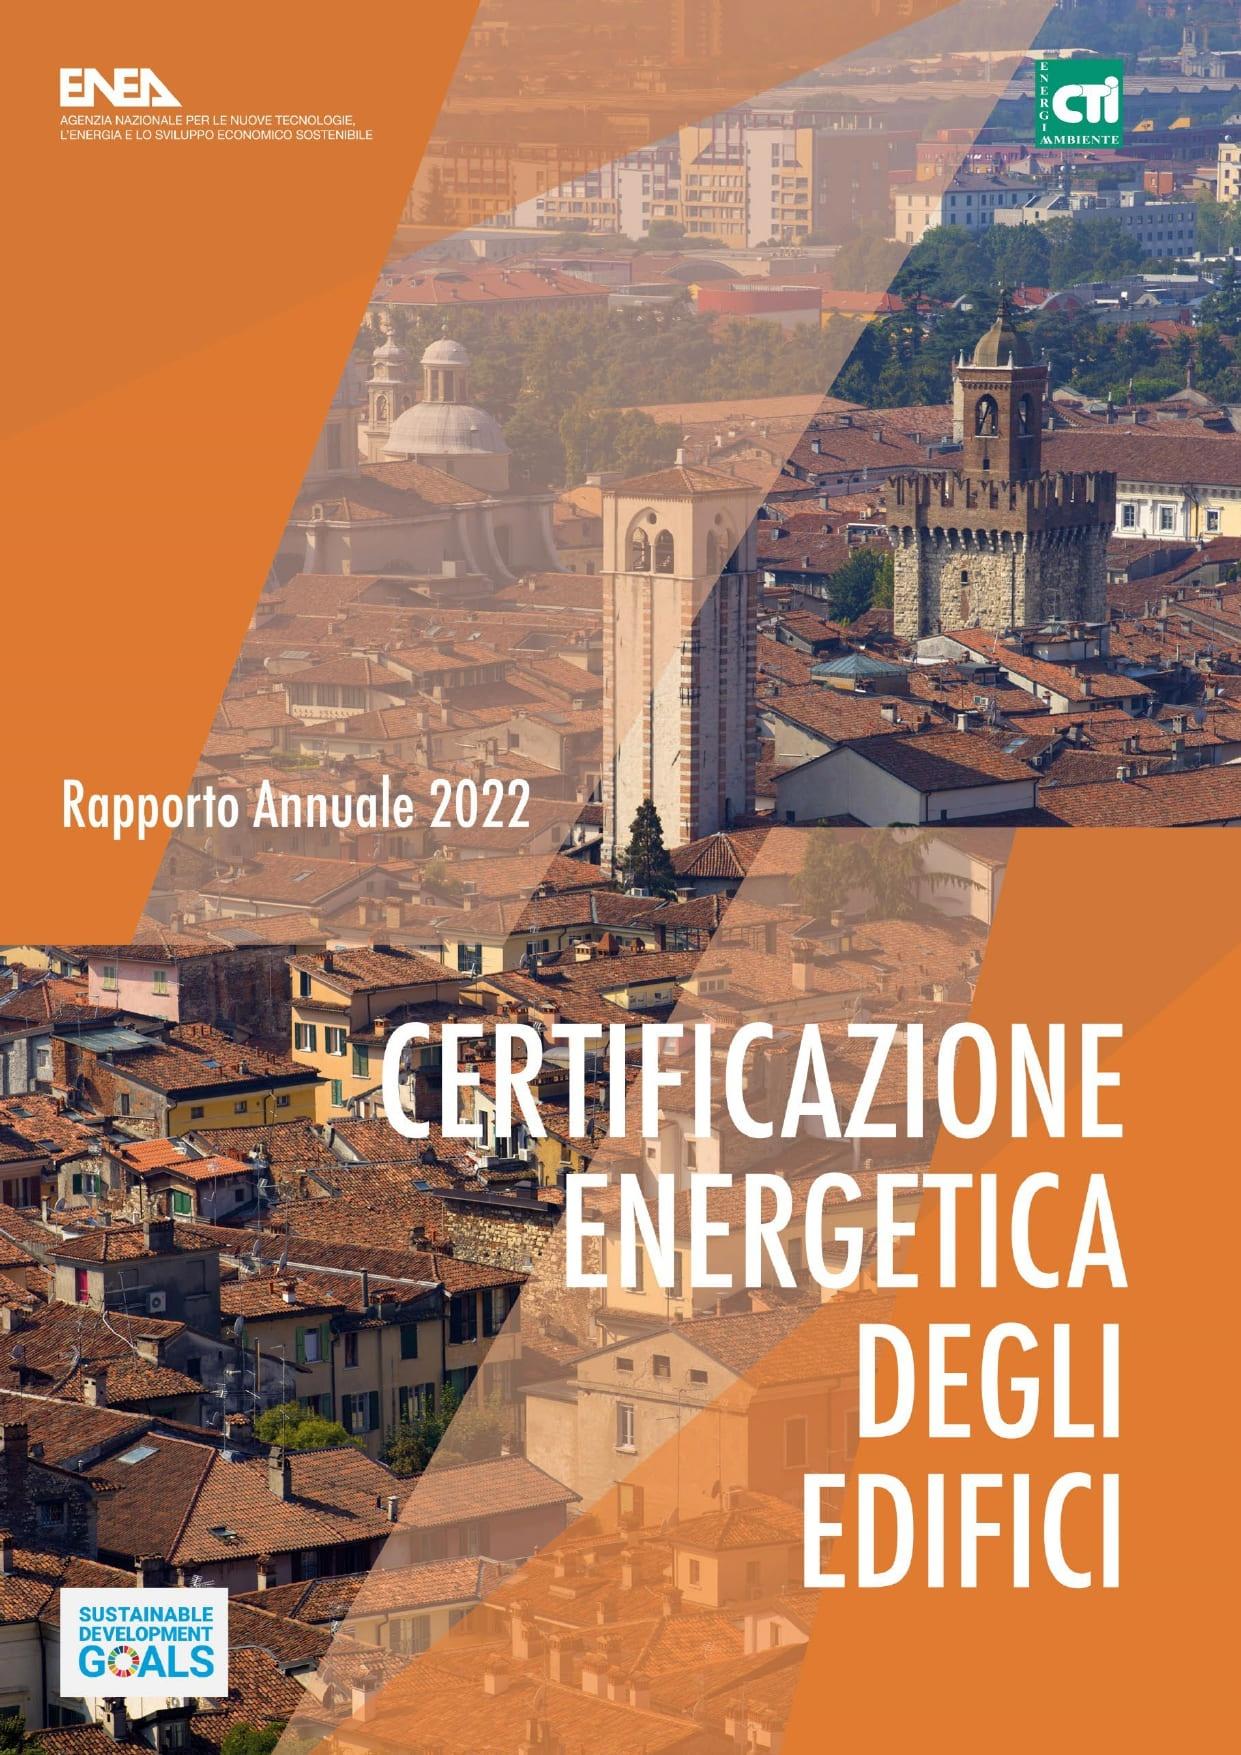 Copertina della terza edizione del Rapporto annuale sulla Certificazione Energetica degli Edifici, risultato della collaborazione tra ENEA e CTI 